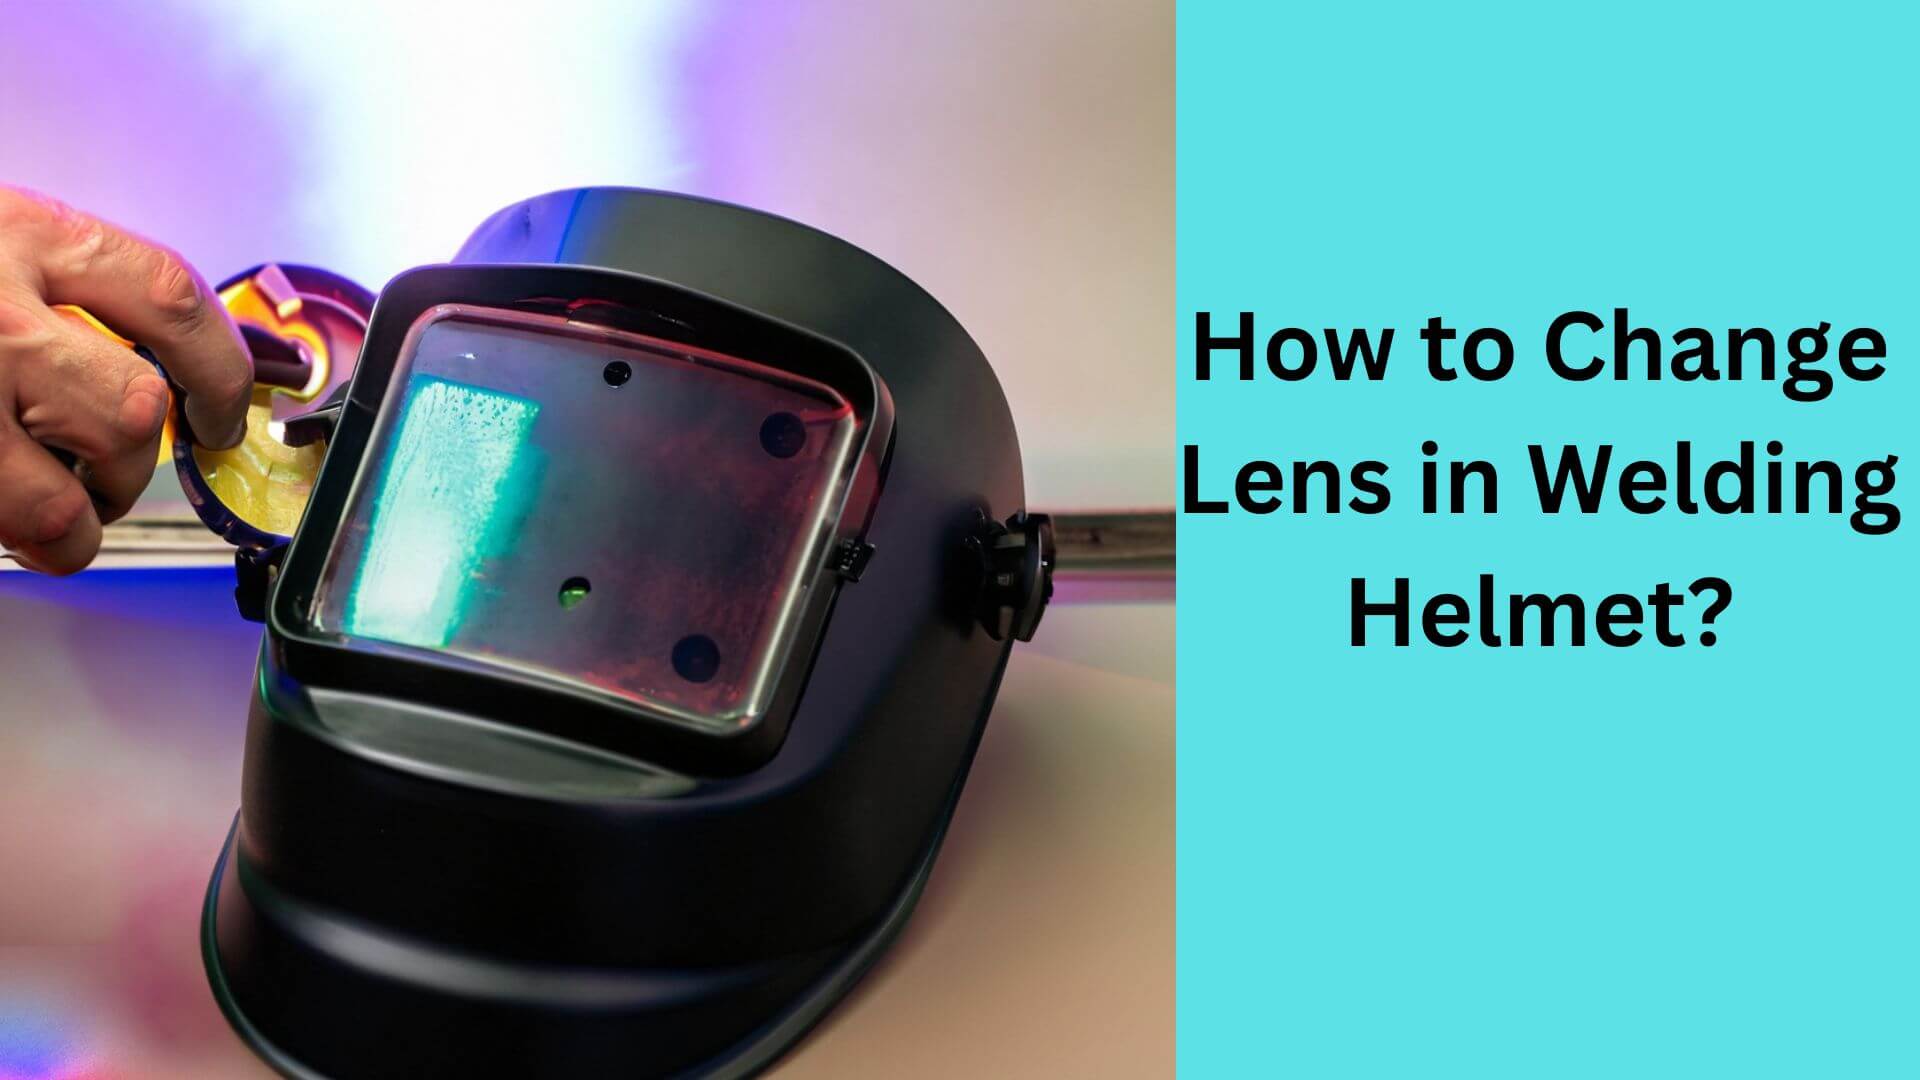 How to Change Lens in Welding Helmet? Lens Swap 101